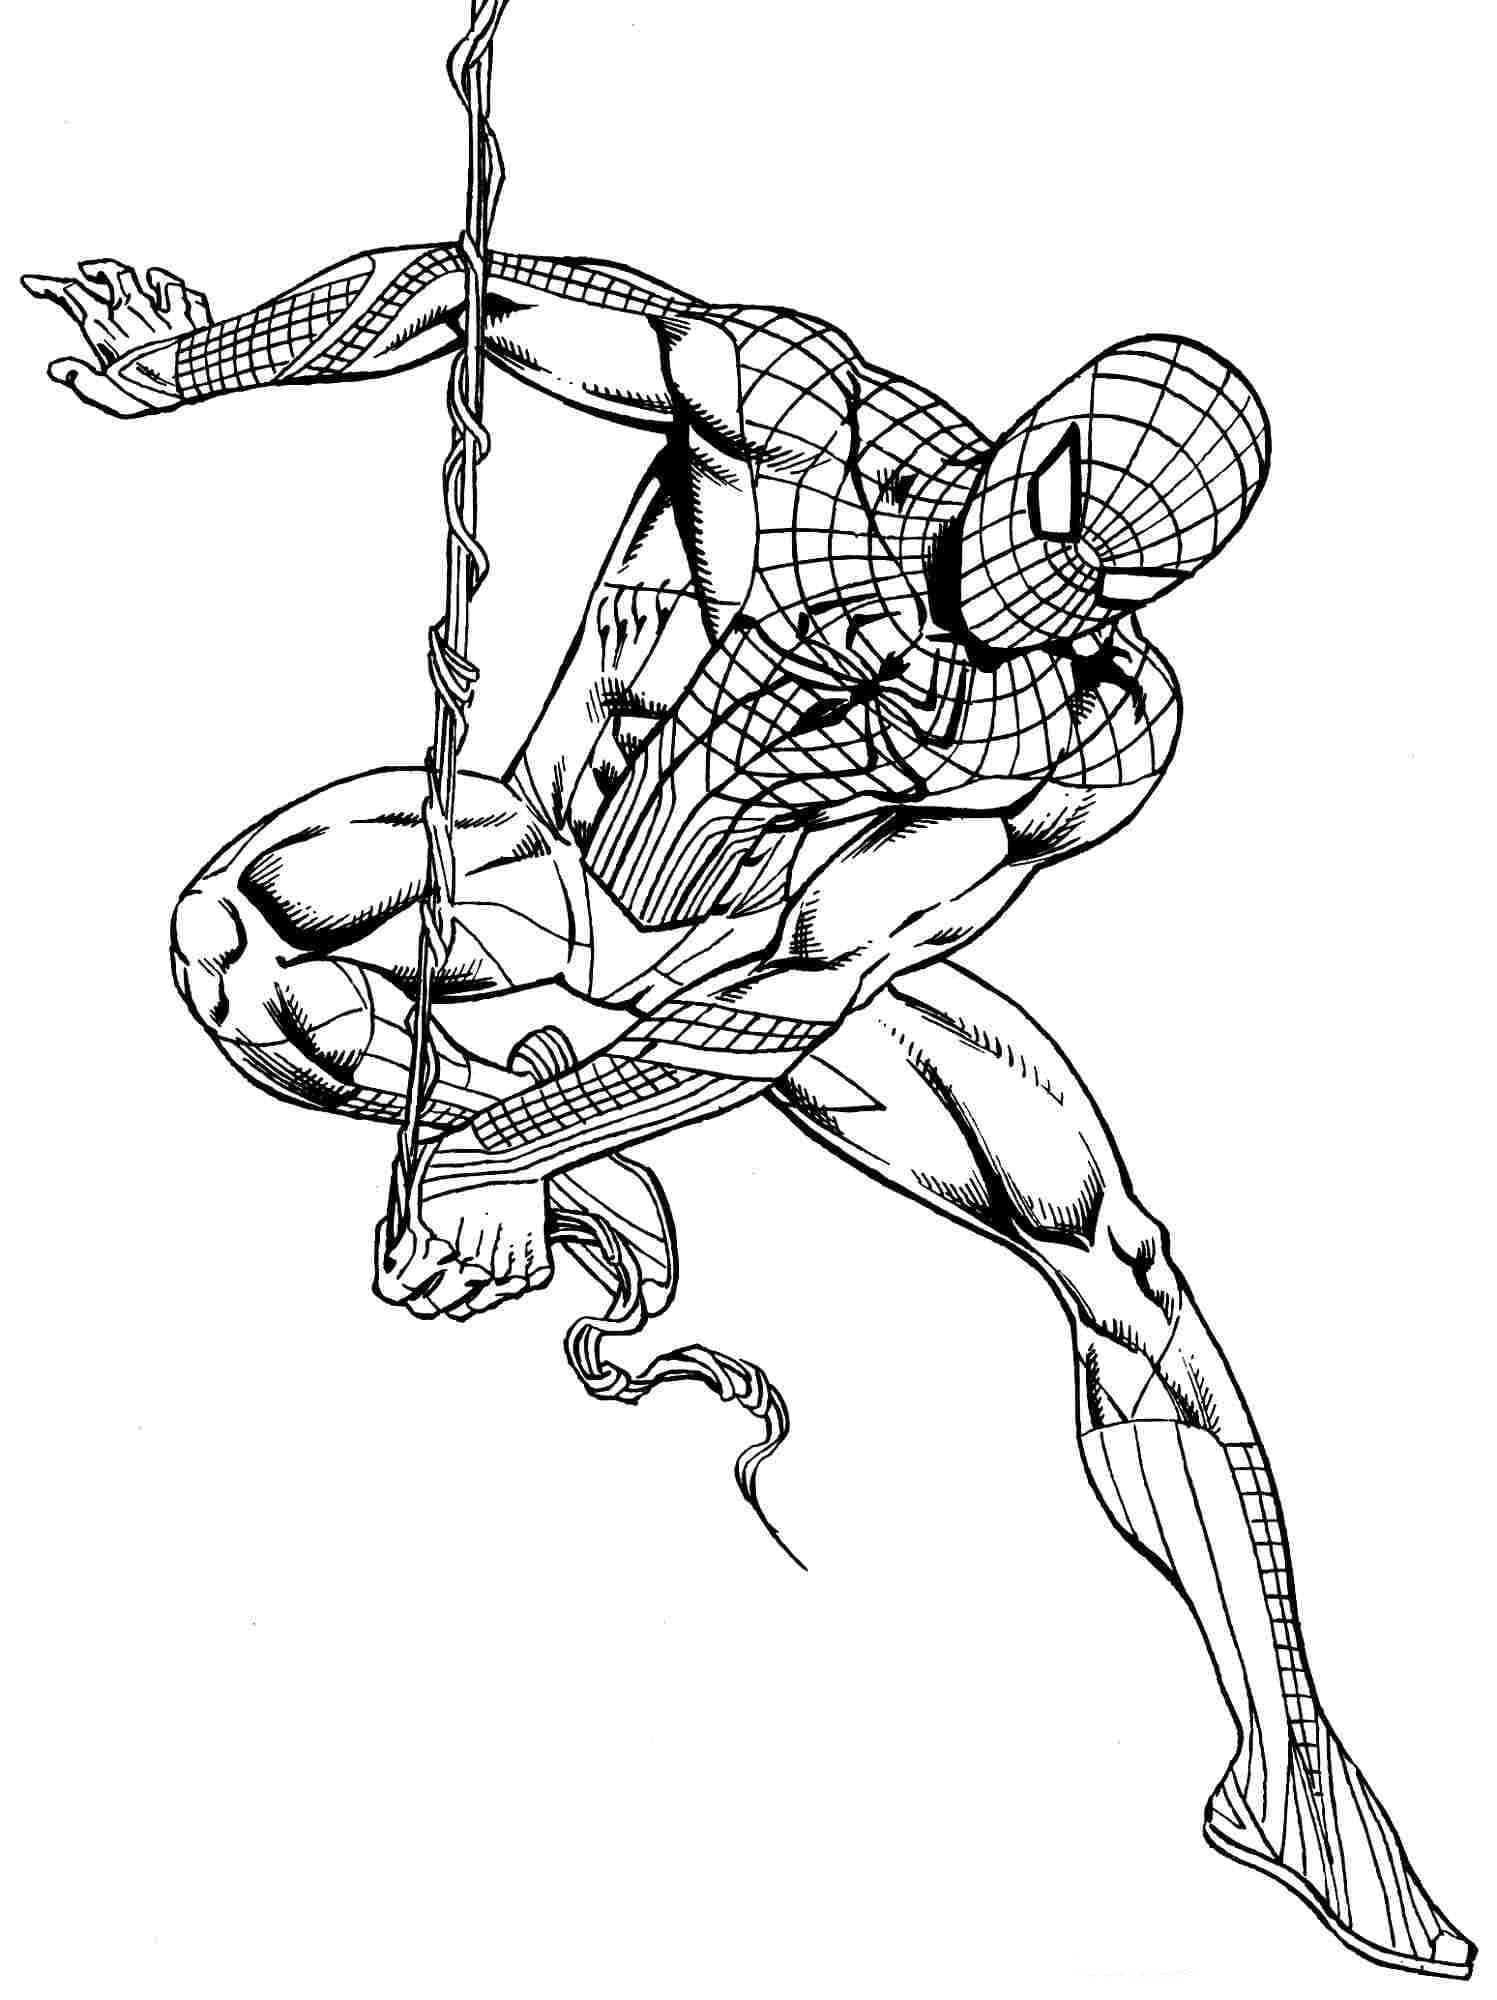 Человек-паук - супергерой, который может выпускать паутину из рук